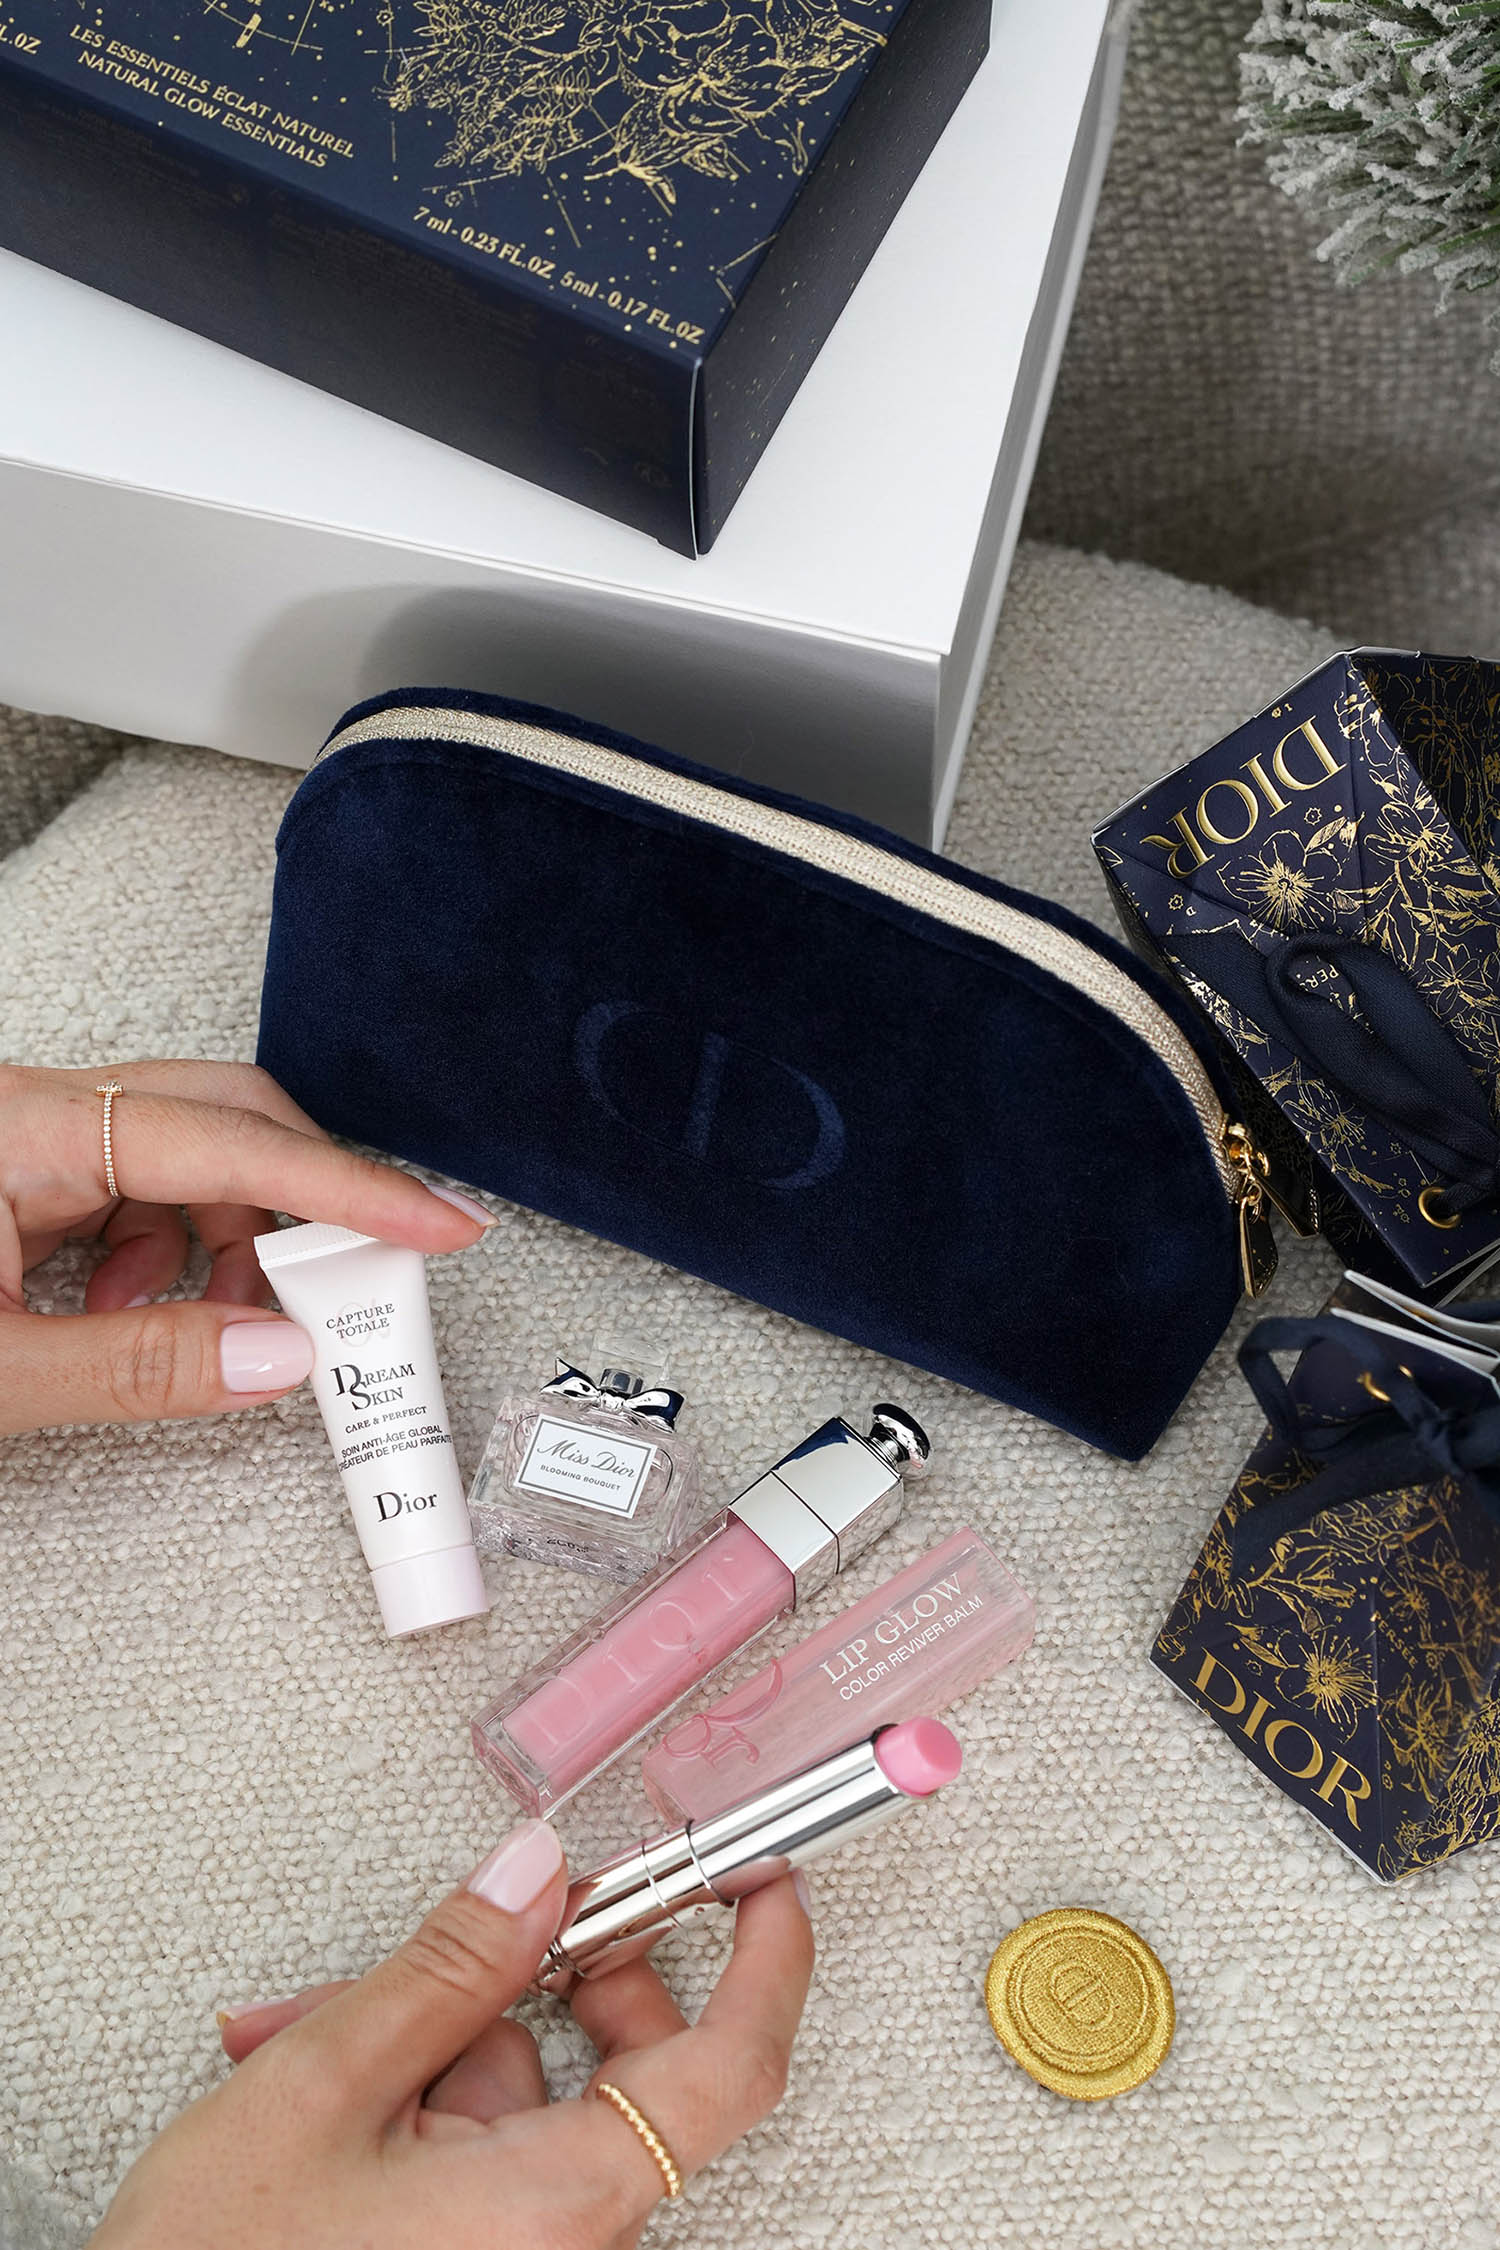 Give Gris Dior: Unisex Eau de Parfum - Holiday Gift Idea